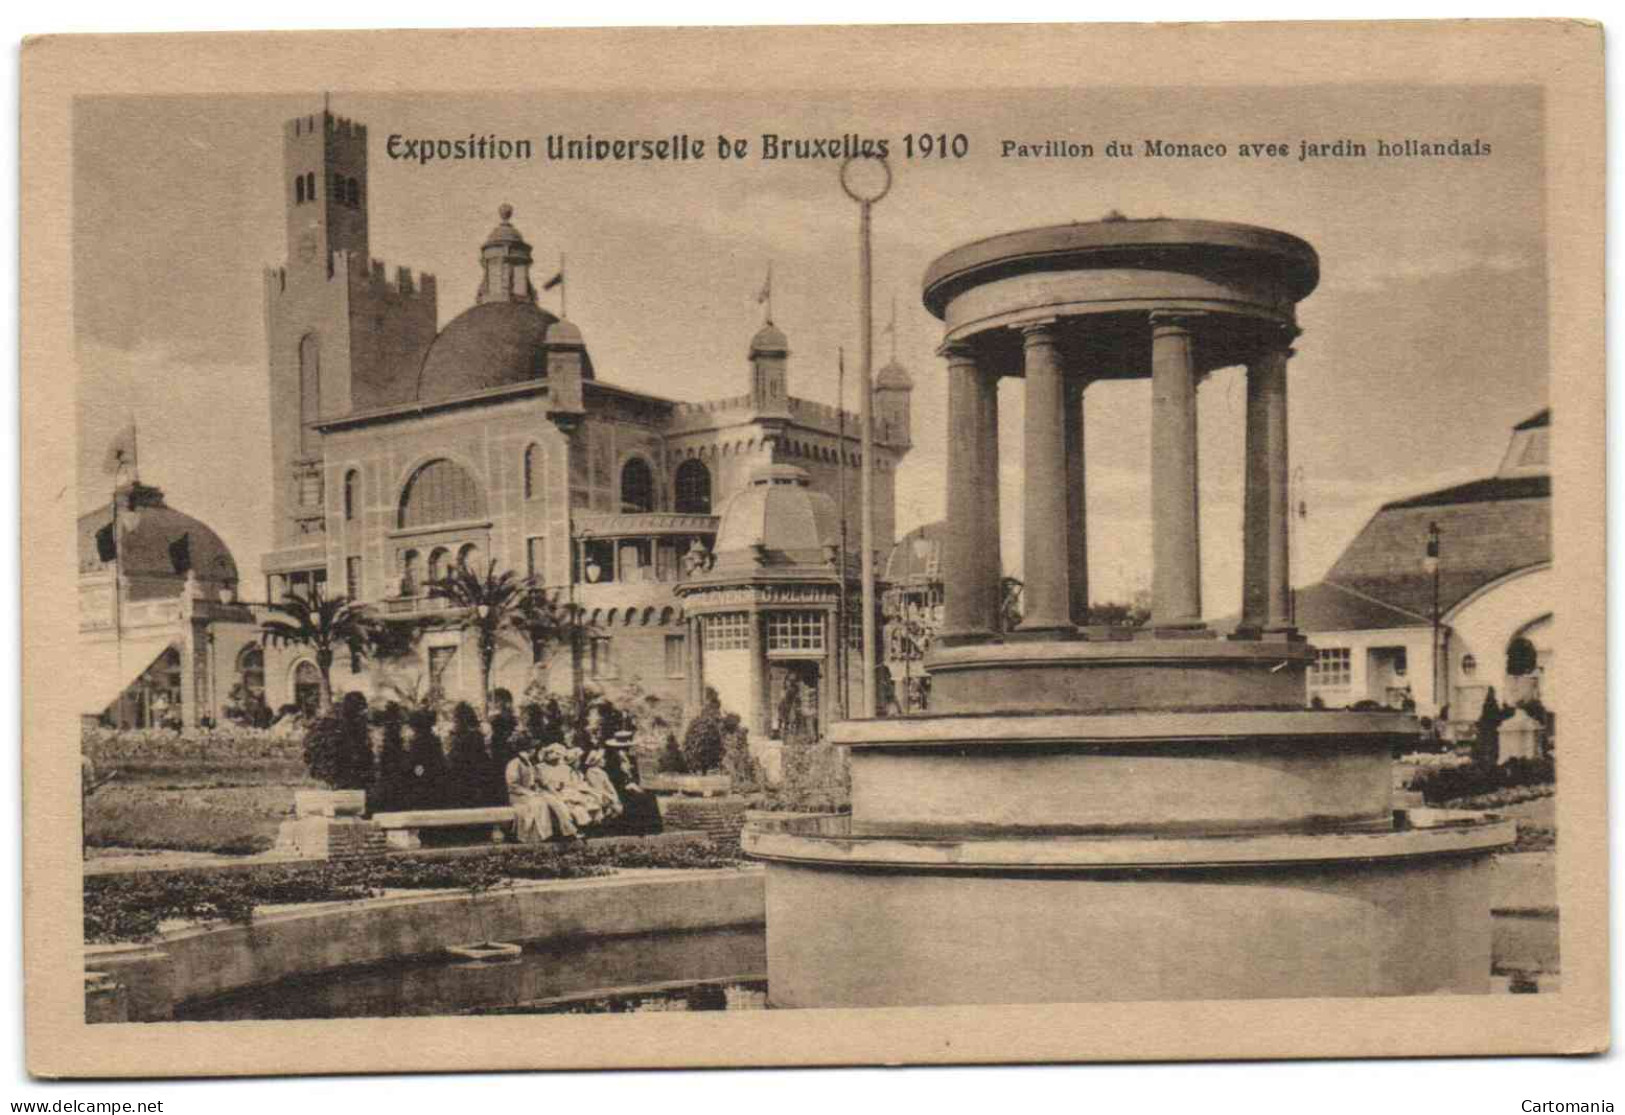 Exposition Universelle De Bruxelles 1910 - Pavillon Du Monaco Avec Jardin Hollandais - Expositions Universelles